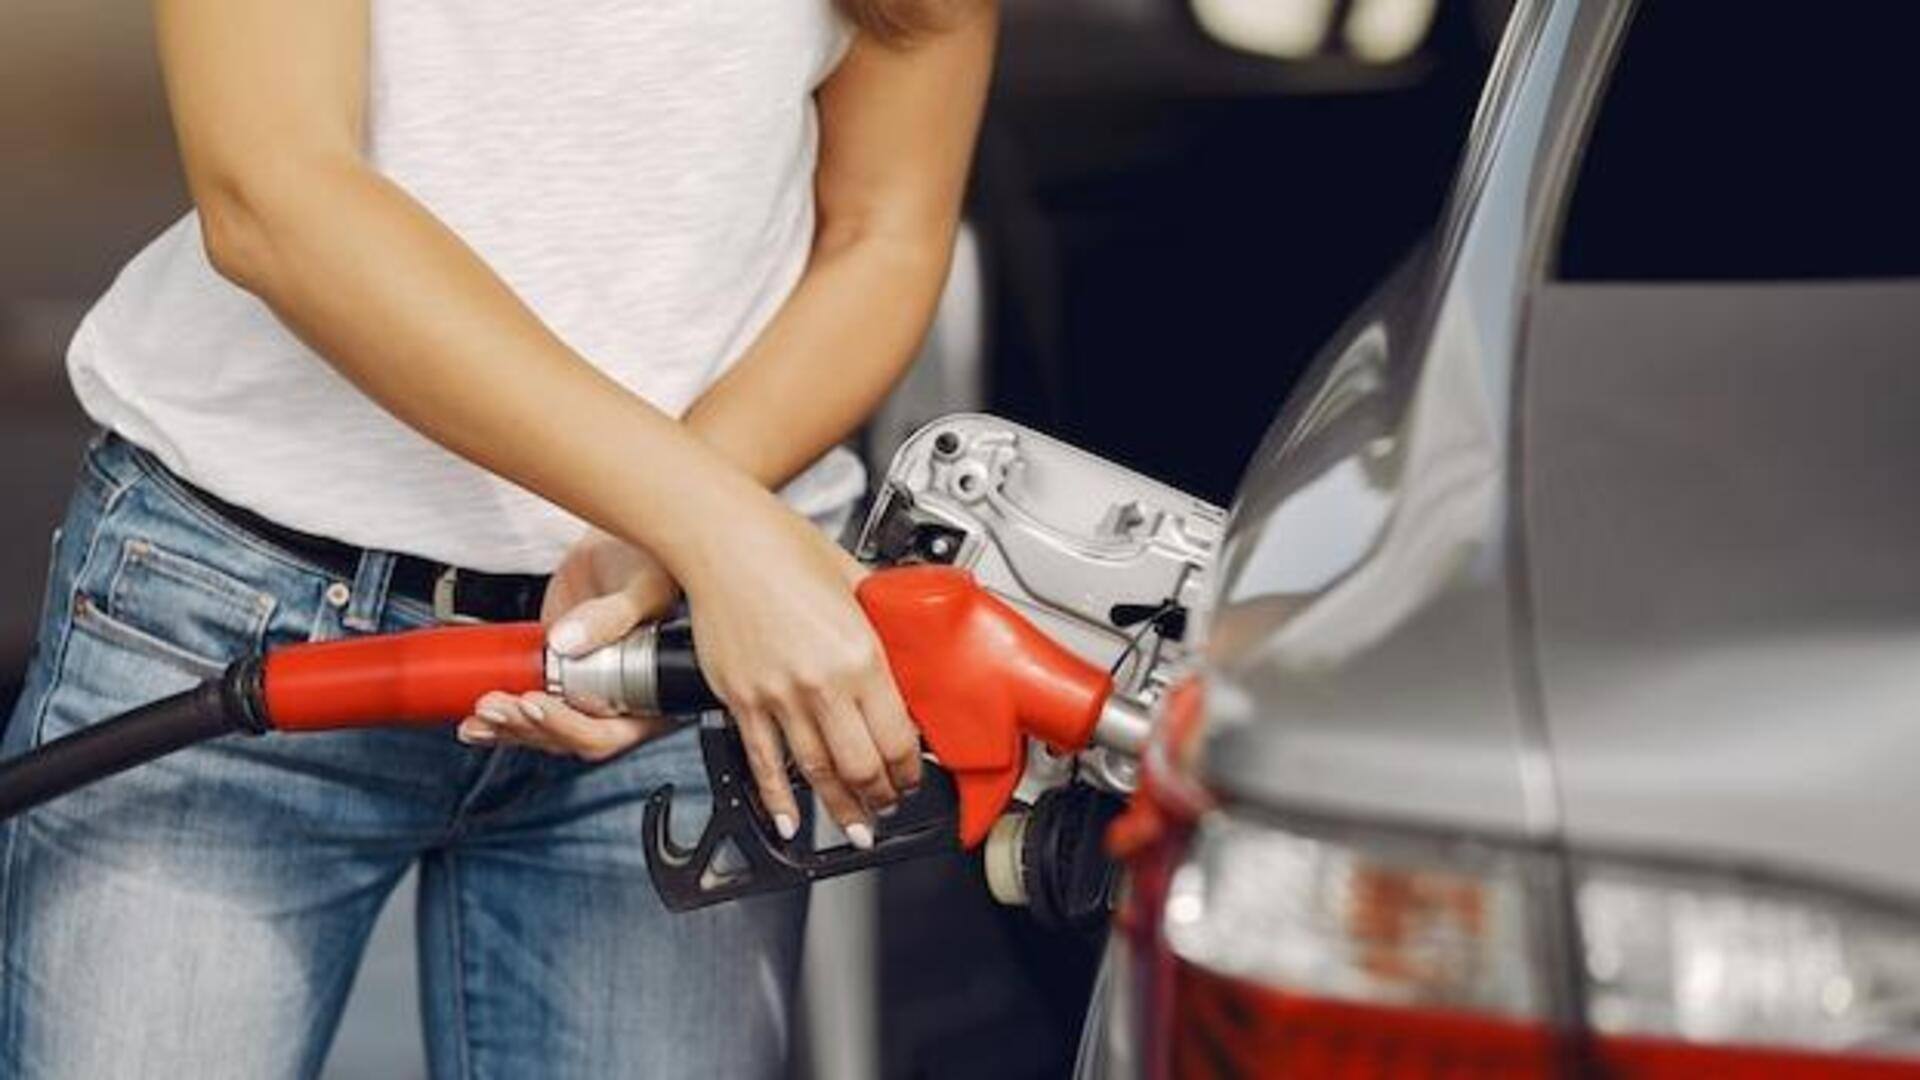 कार केयर टिप्स: कम पेट्रोल-डीजल में गाड़ी चलना पड़ सकता है भारी 